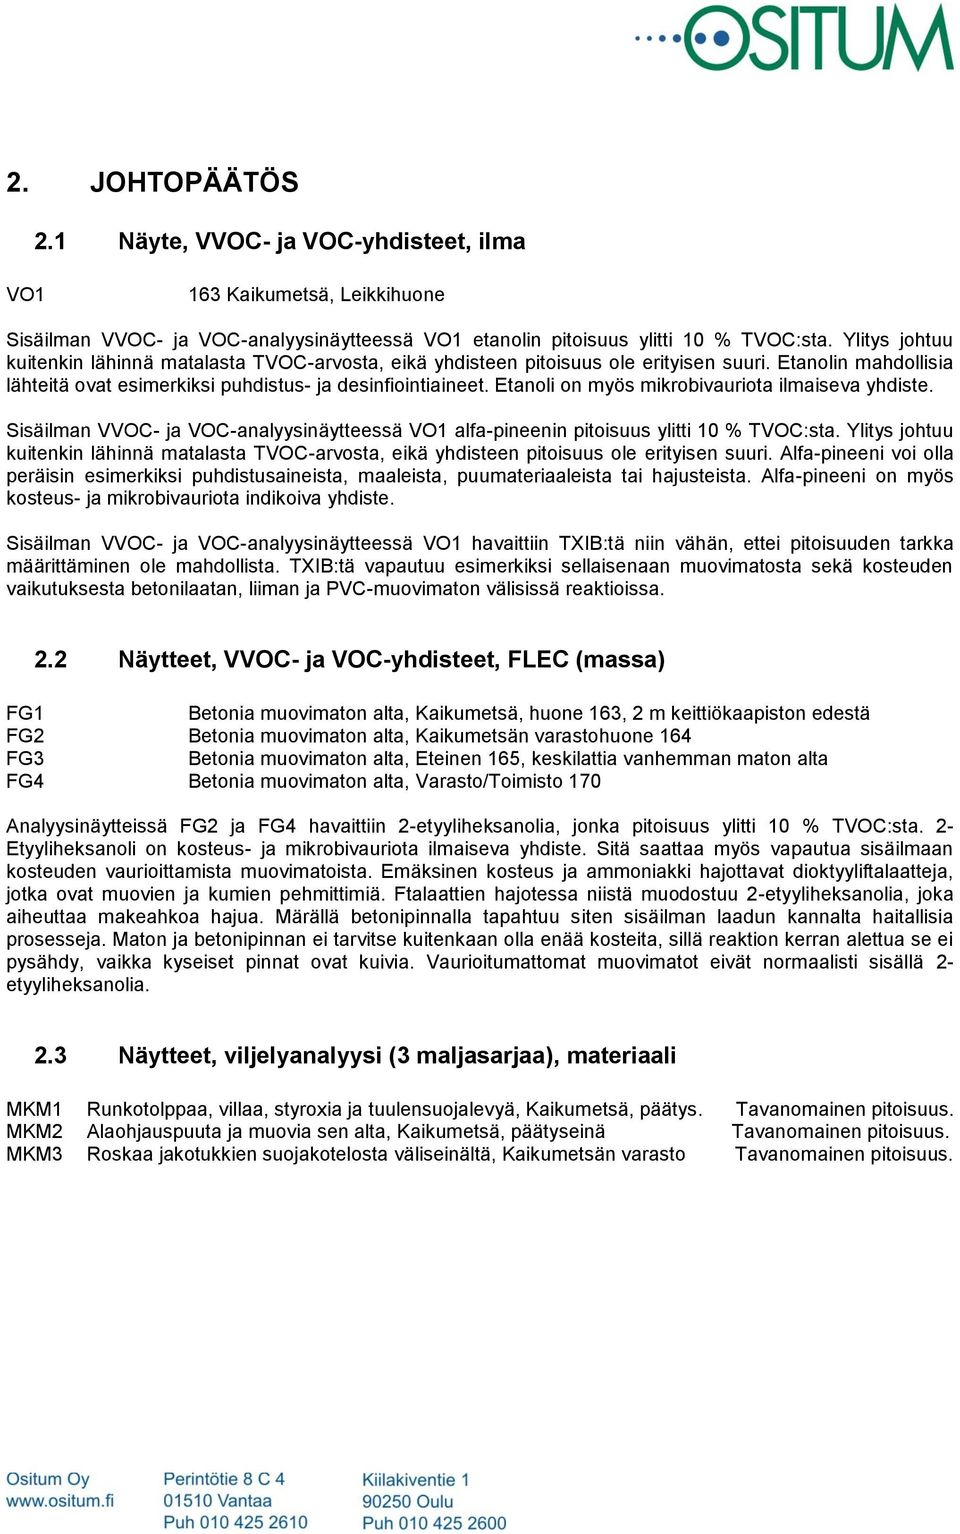 Etanoli on myös mikrobivauriota ilmaiseva yhdiste. Sisäilman VVOC- ja VOC-analyysinäytteessä VO1 alfa-pineenin pitoisuus ylitti 10 % TVOC:sta.